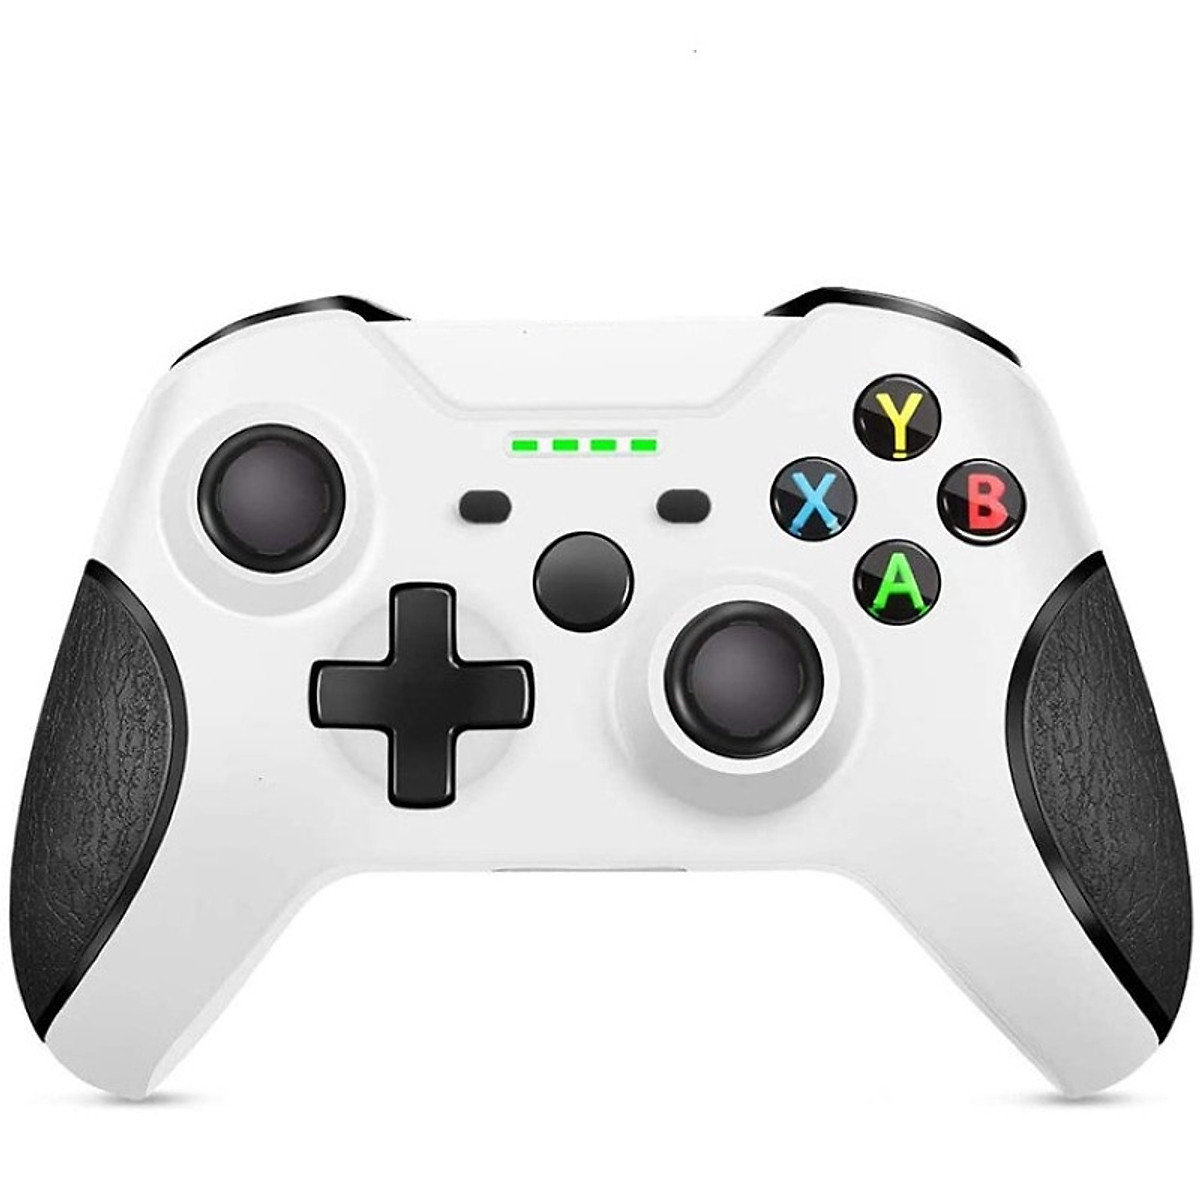 Gamepad tay Game không dây Xbox One wireless 2.4G - cho máy tính, laptop, máy game console